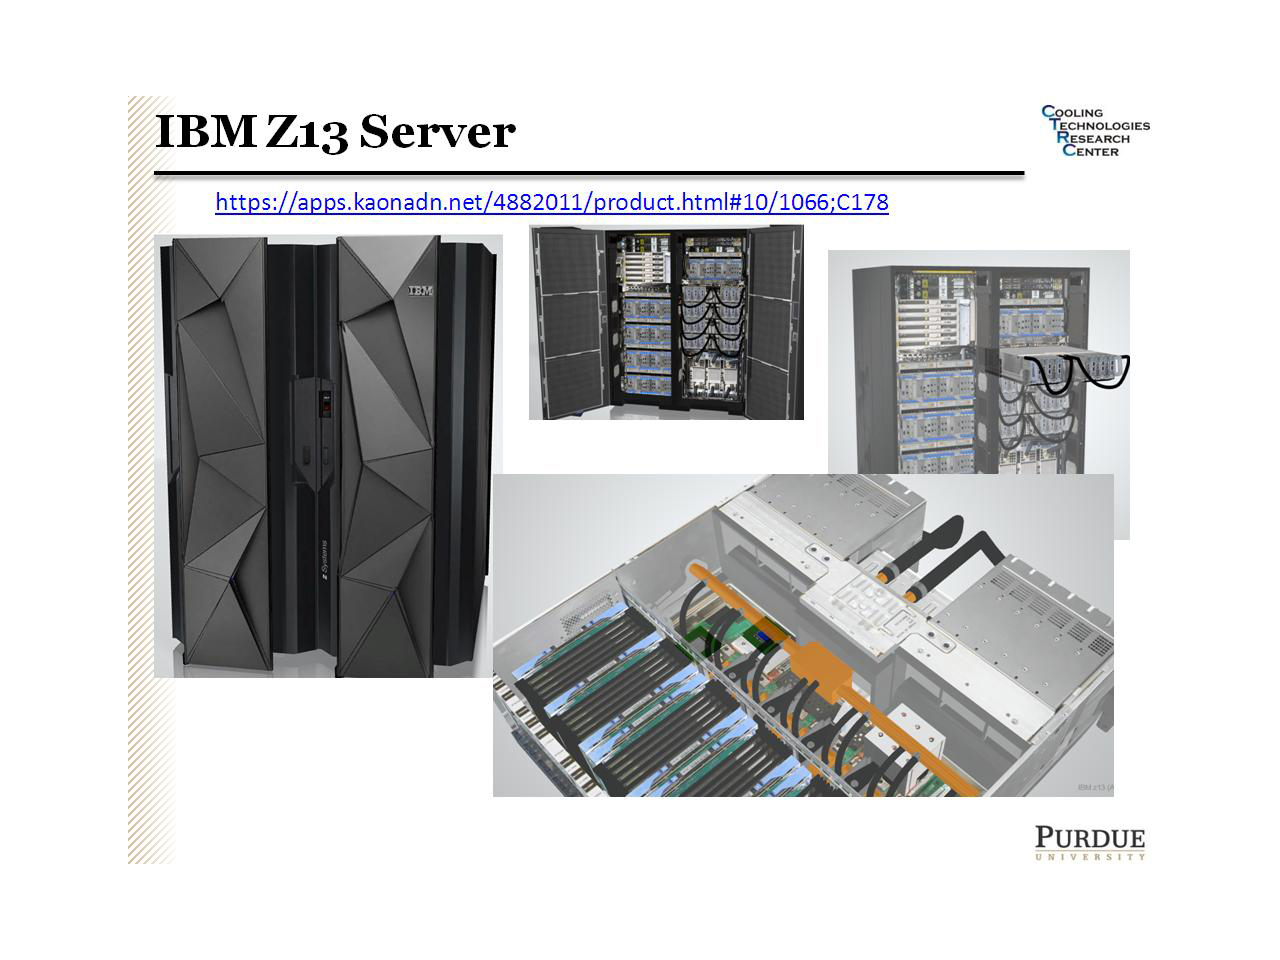 IBM Z13 Server